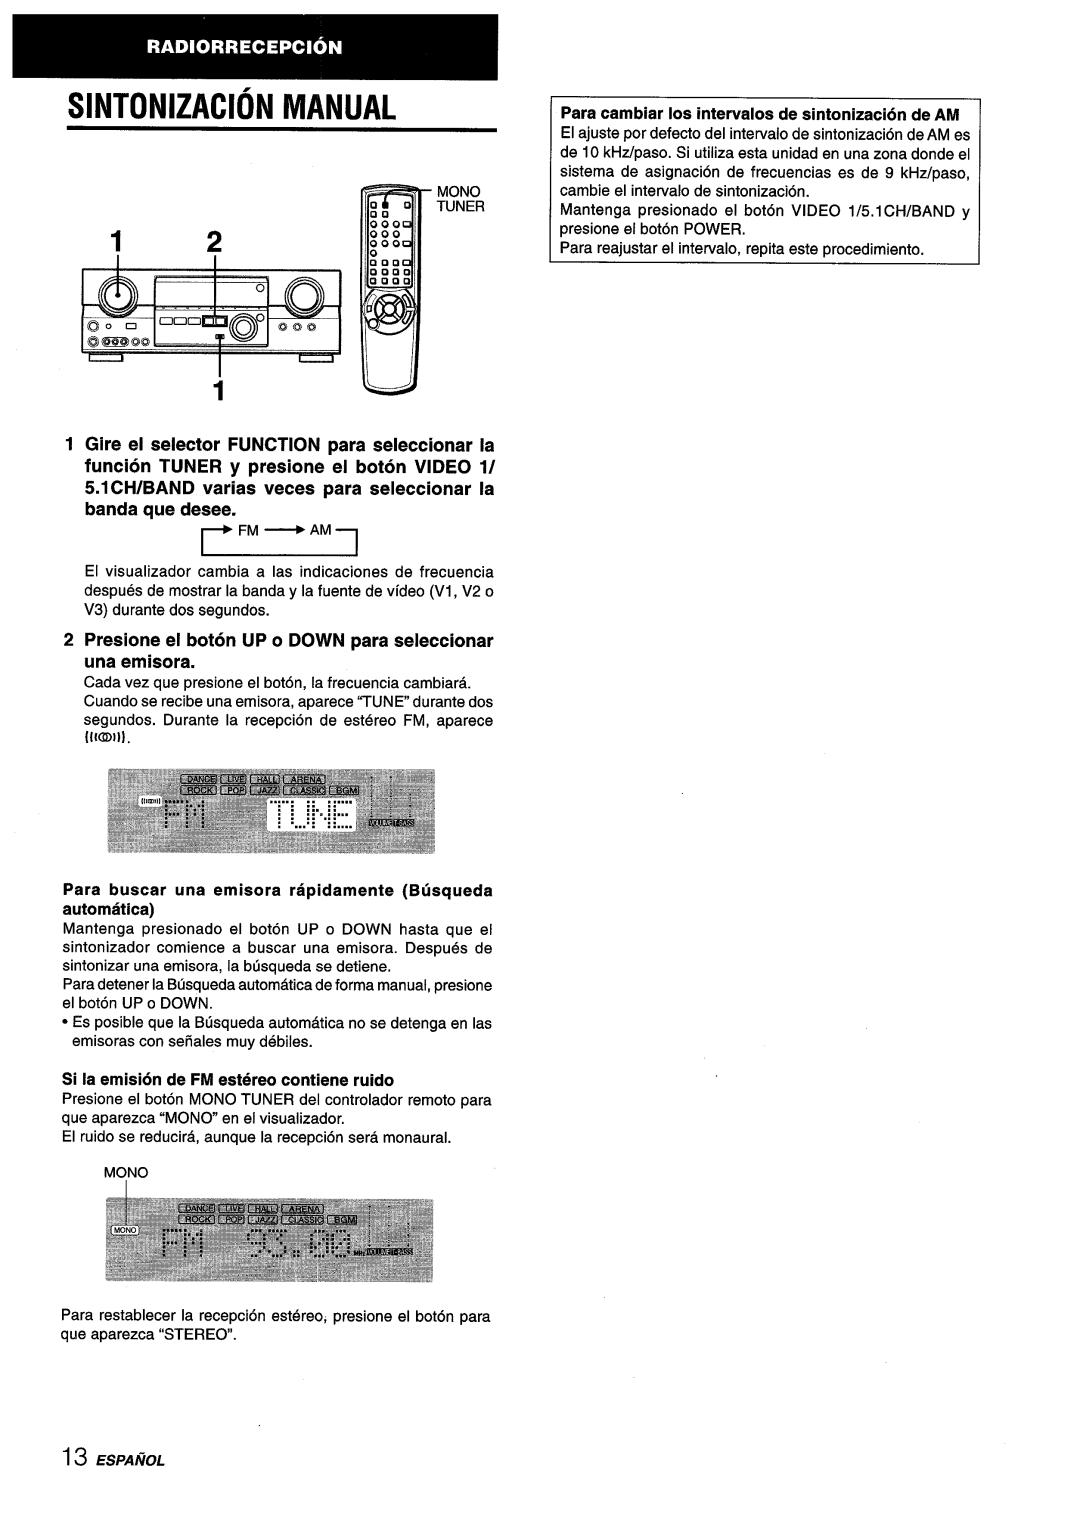 Aiwa AV-D55 manual Sintonizacion Manual, 5.1 CH/BAND varias veces para seleccionar la banda que desee 